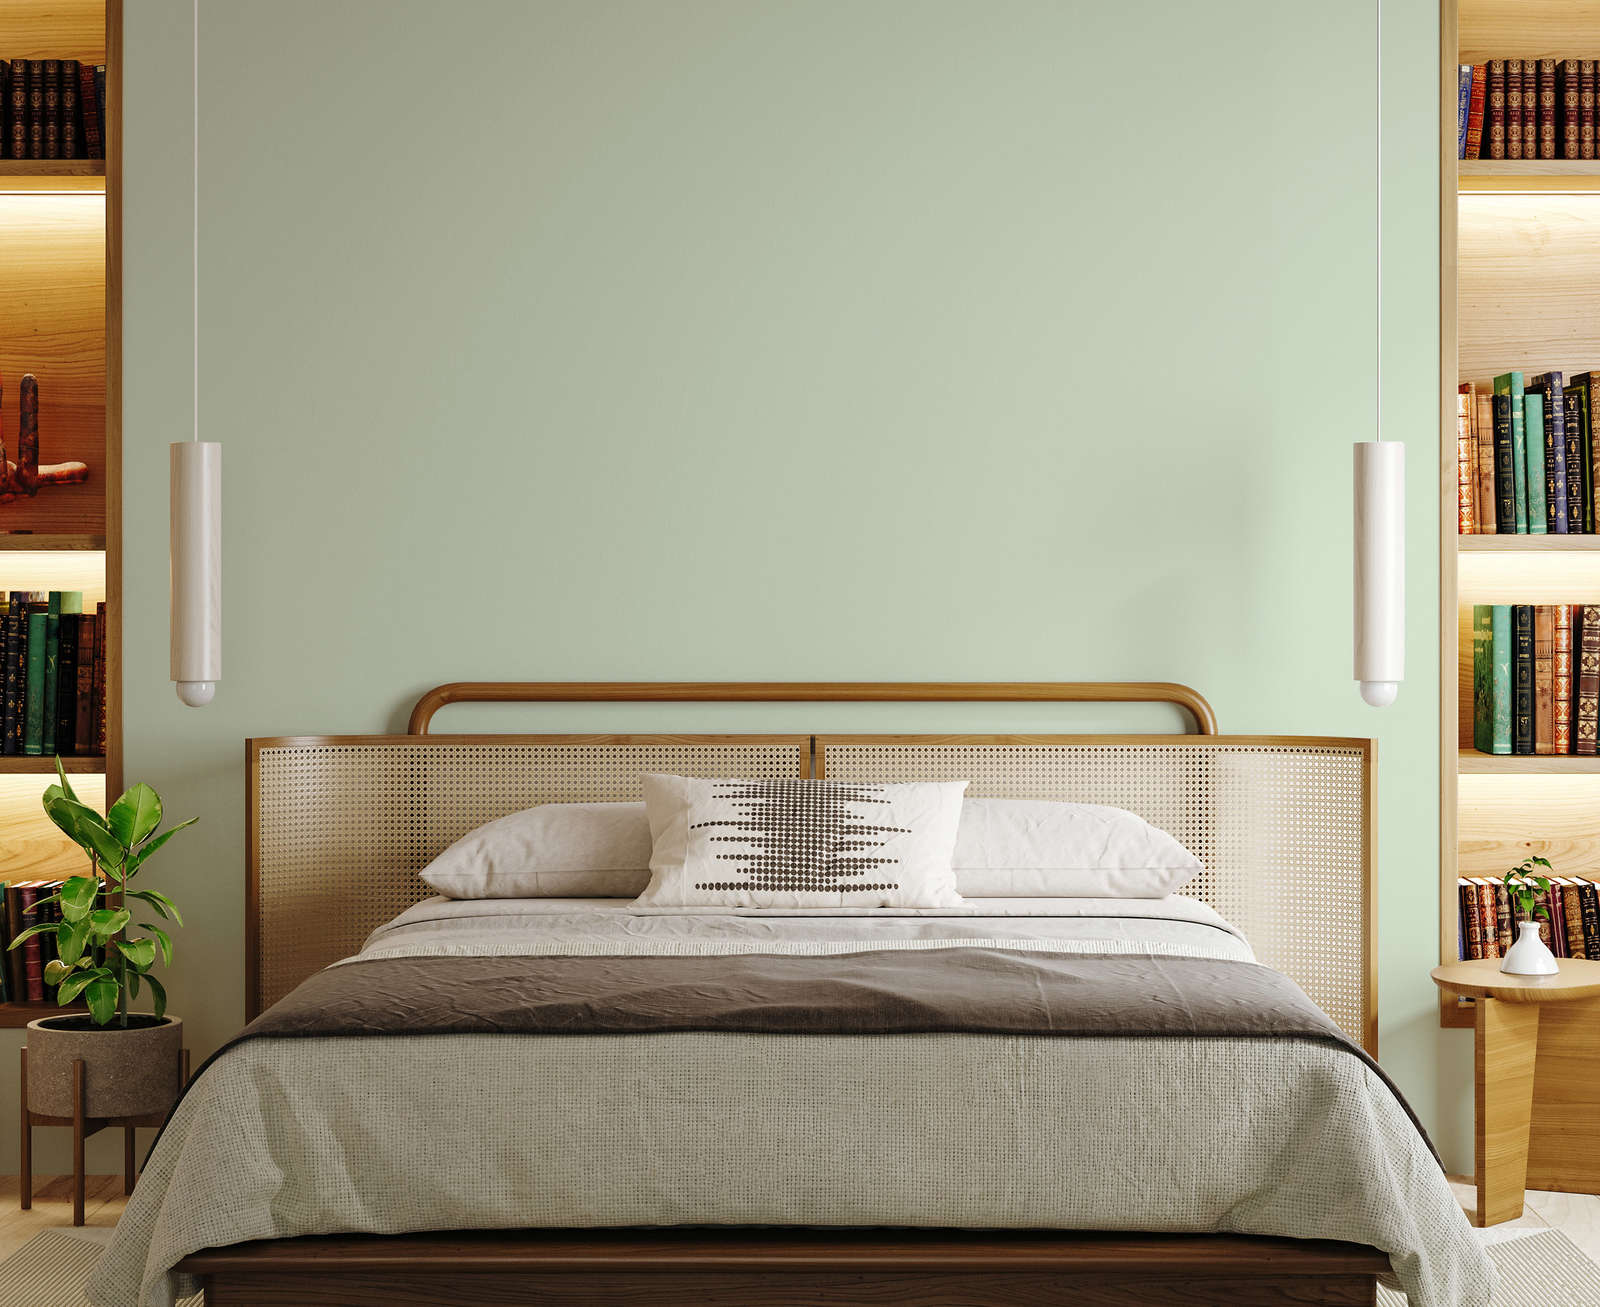             Premium Wall Paint Awakening Pastel Green »Sweet Sage« NW400 – 2.5 litre
        